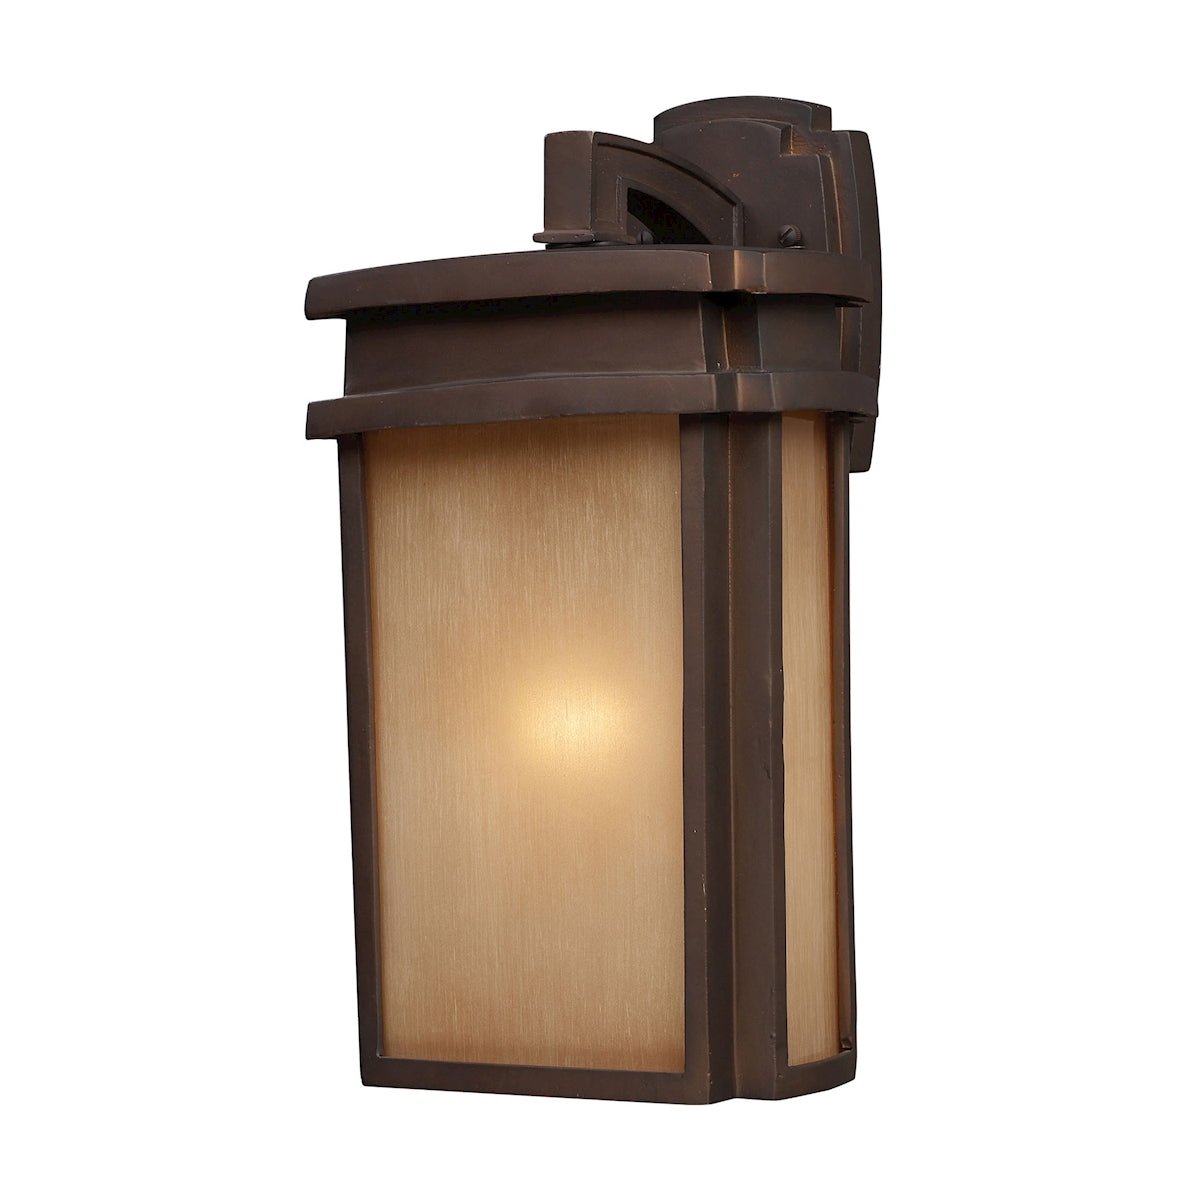 ELK Lighting 42141/1 Sedona 1-Light Outdoor Wall Lamp in Clay Bronze